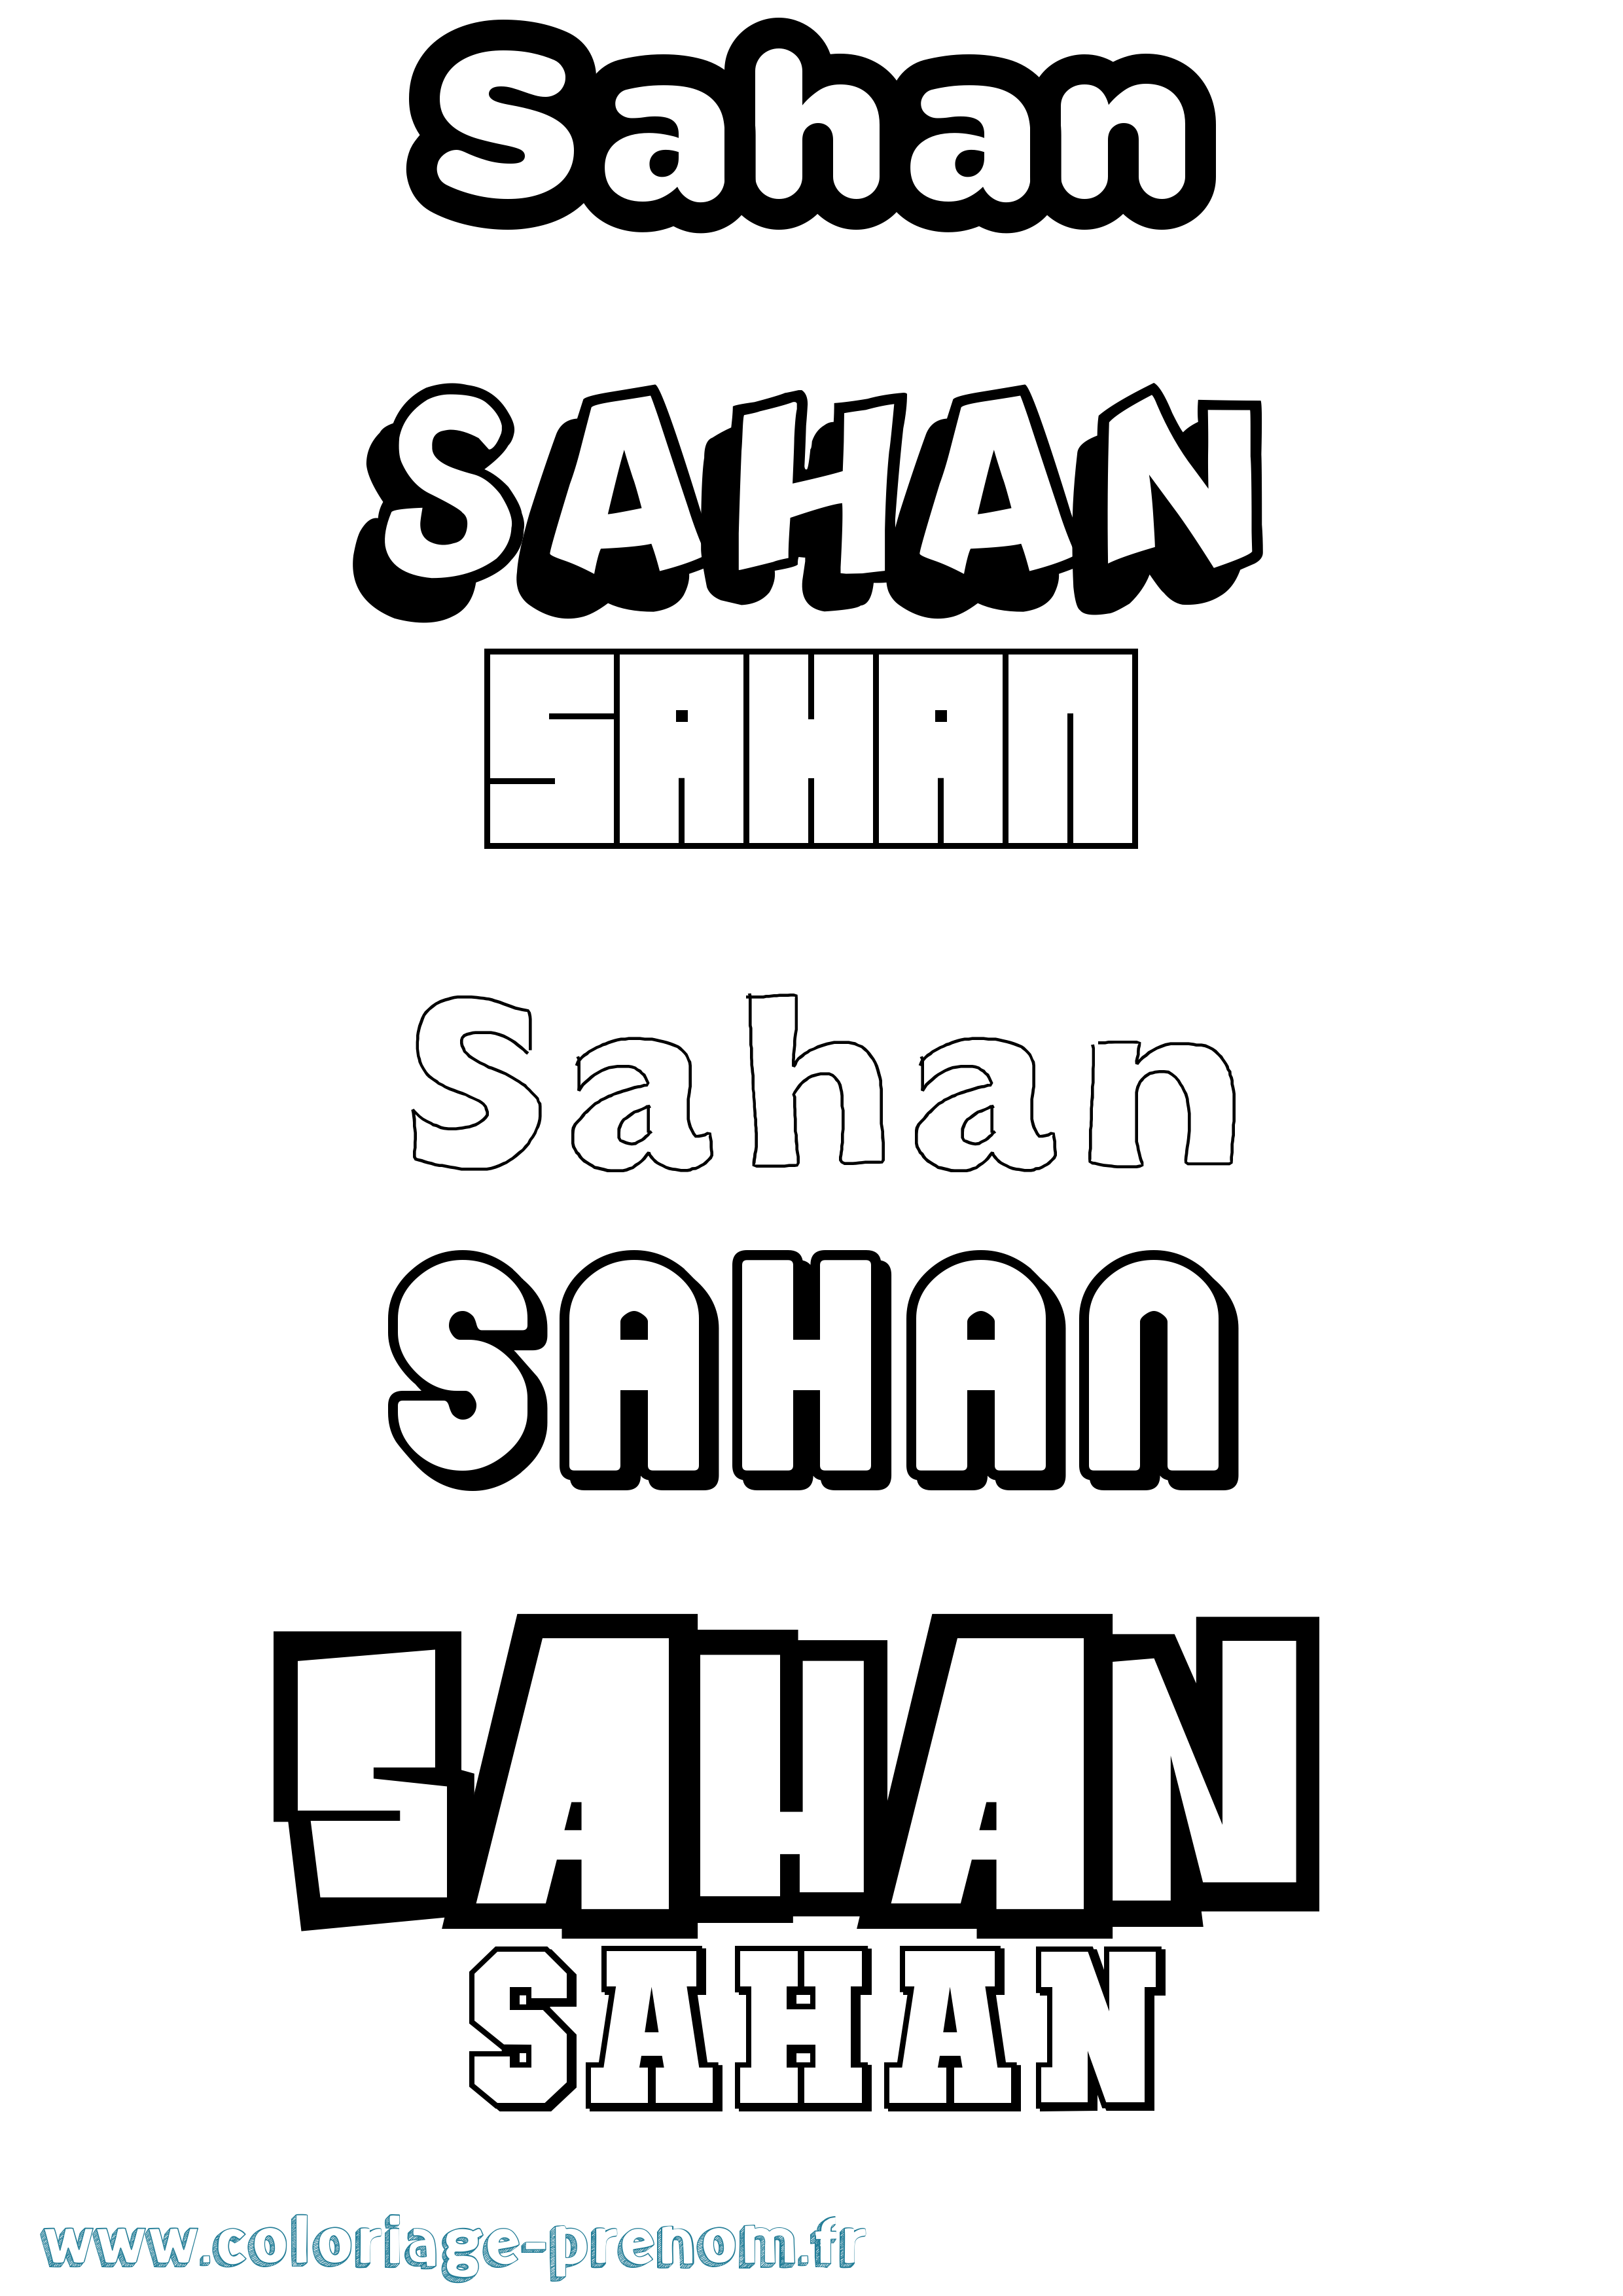 Coloriage prénom Sahan Simple